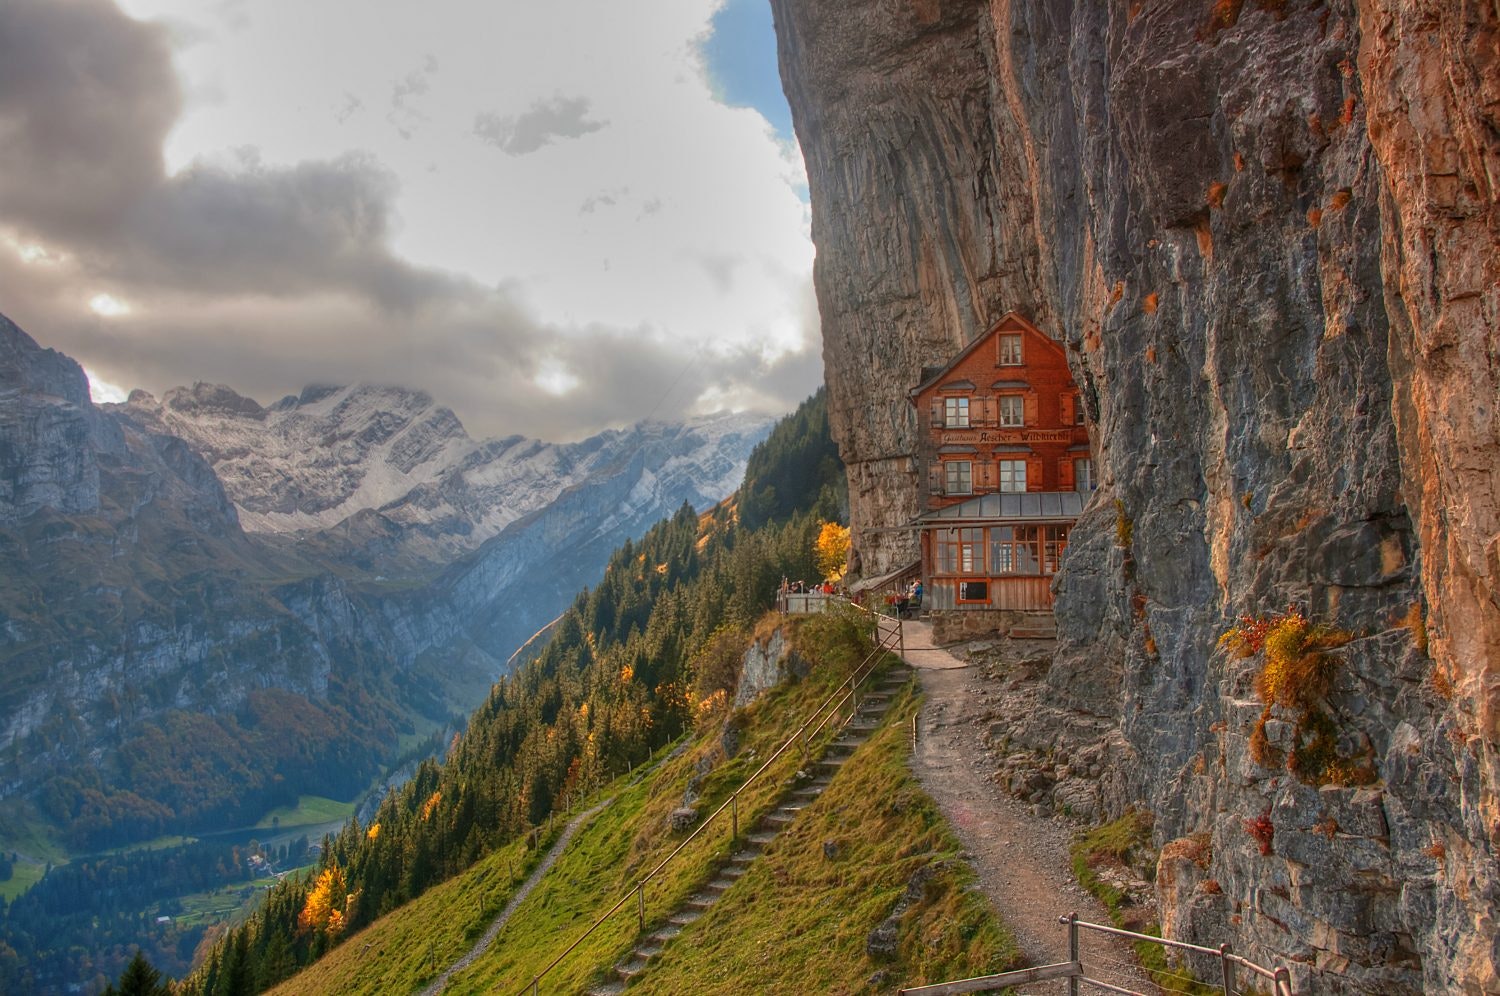 The Ascher mountain restaurant in Switzerland.